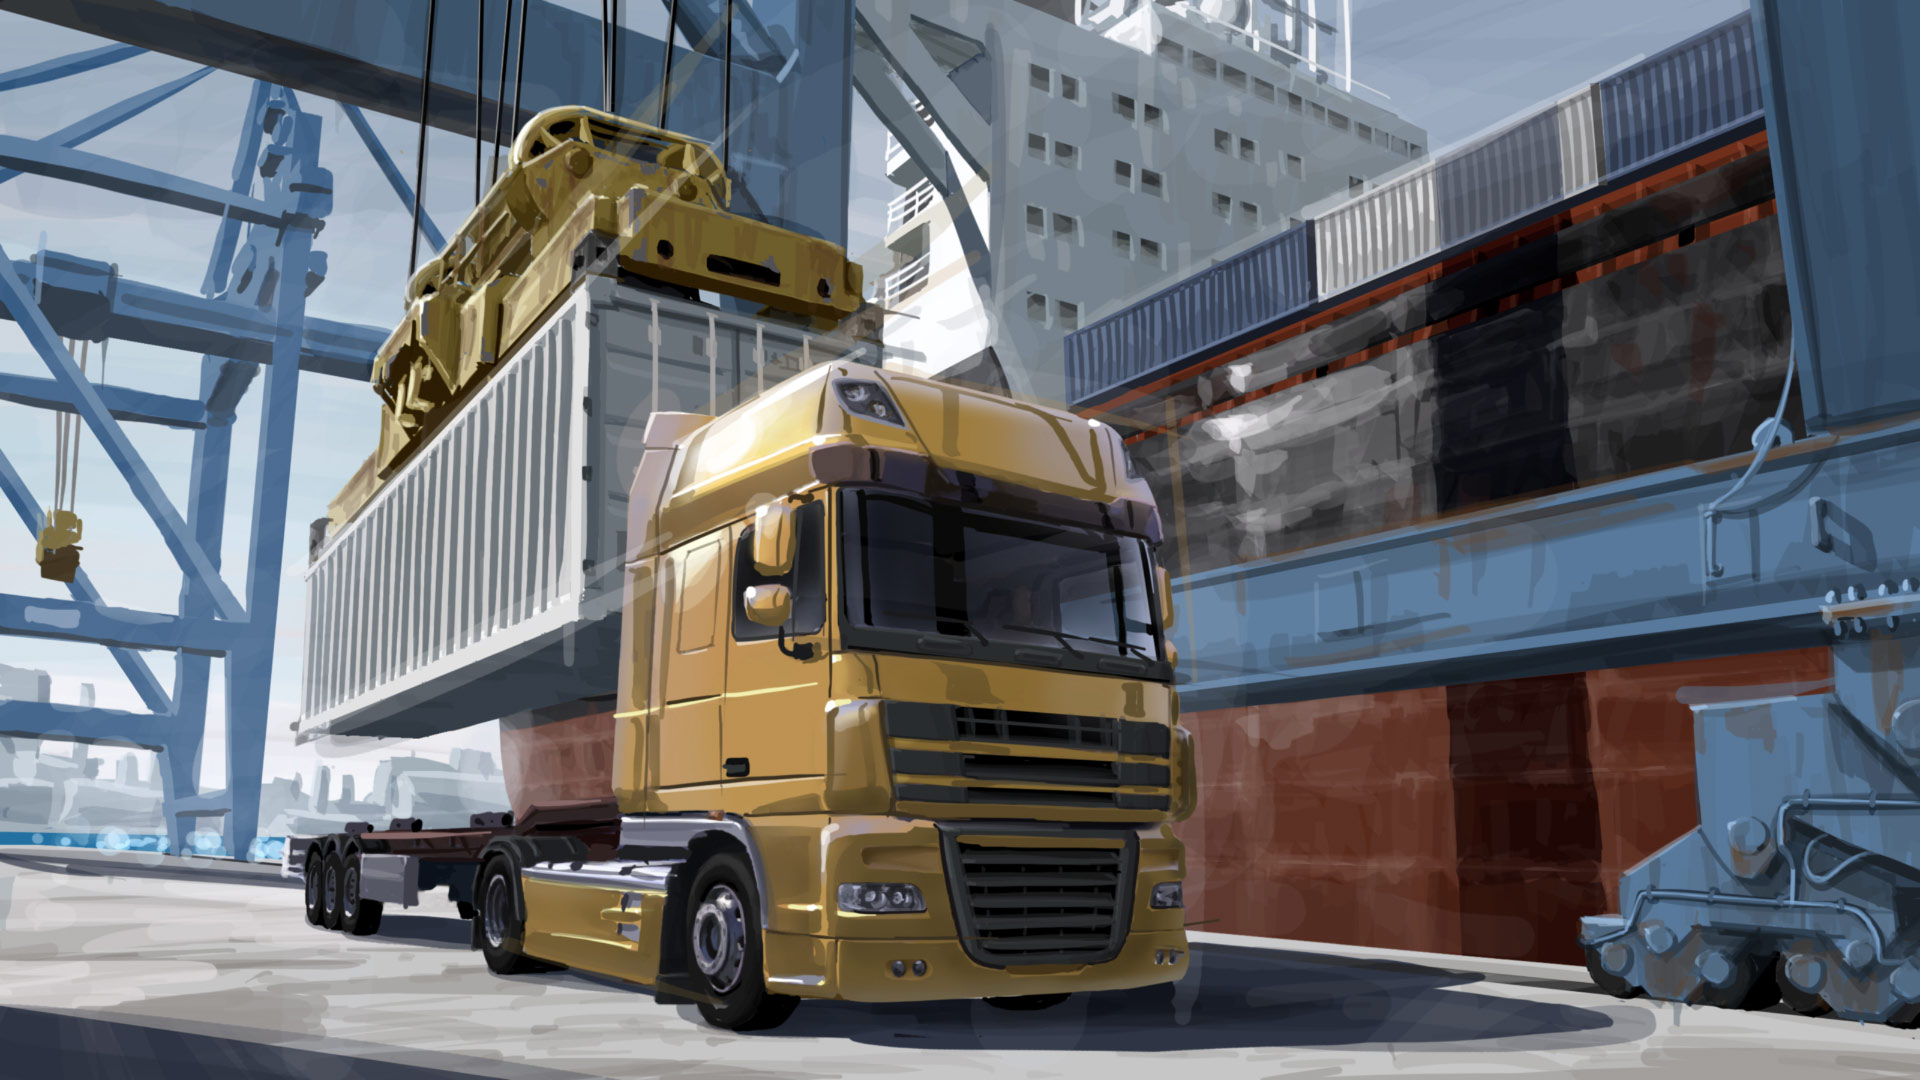 Descargar fondos de escritorio de Euro Truck Simulator 2 HD